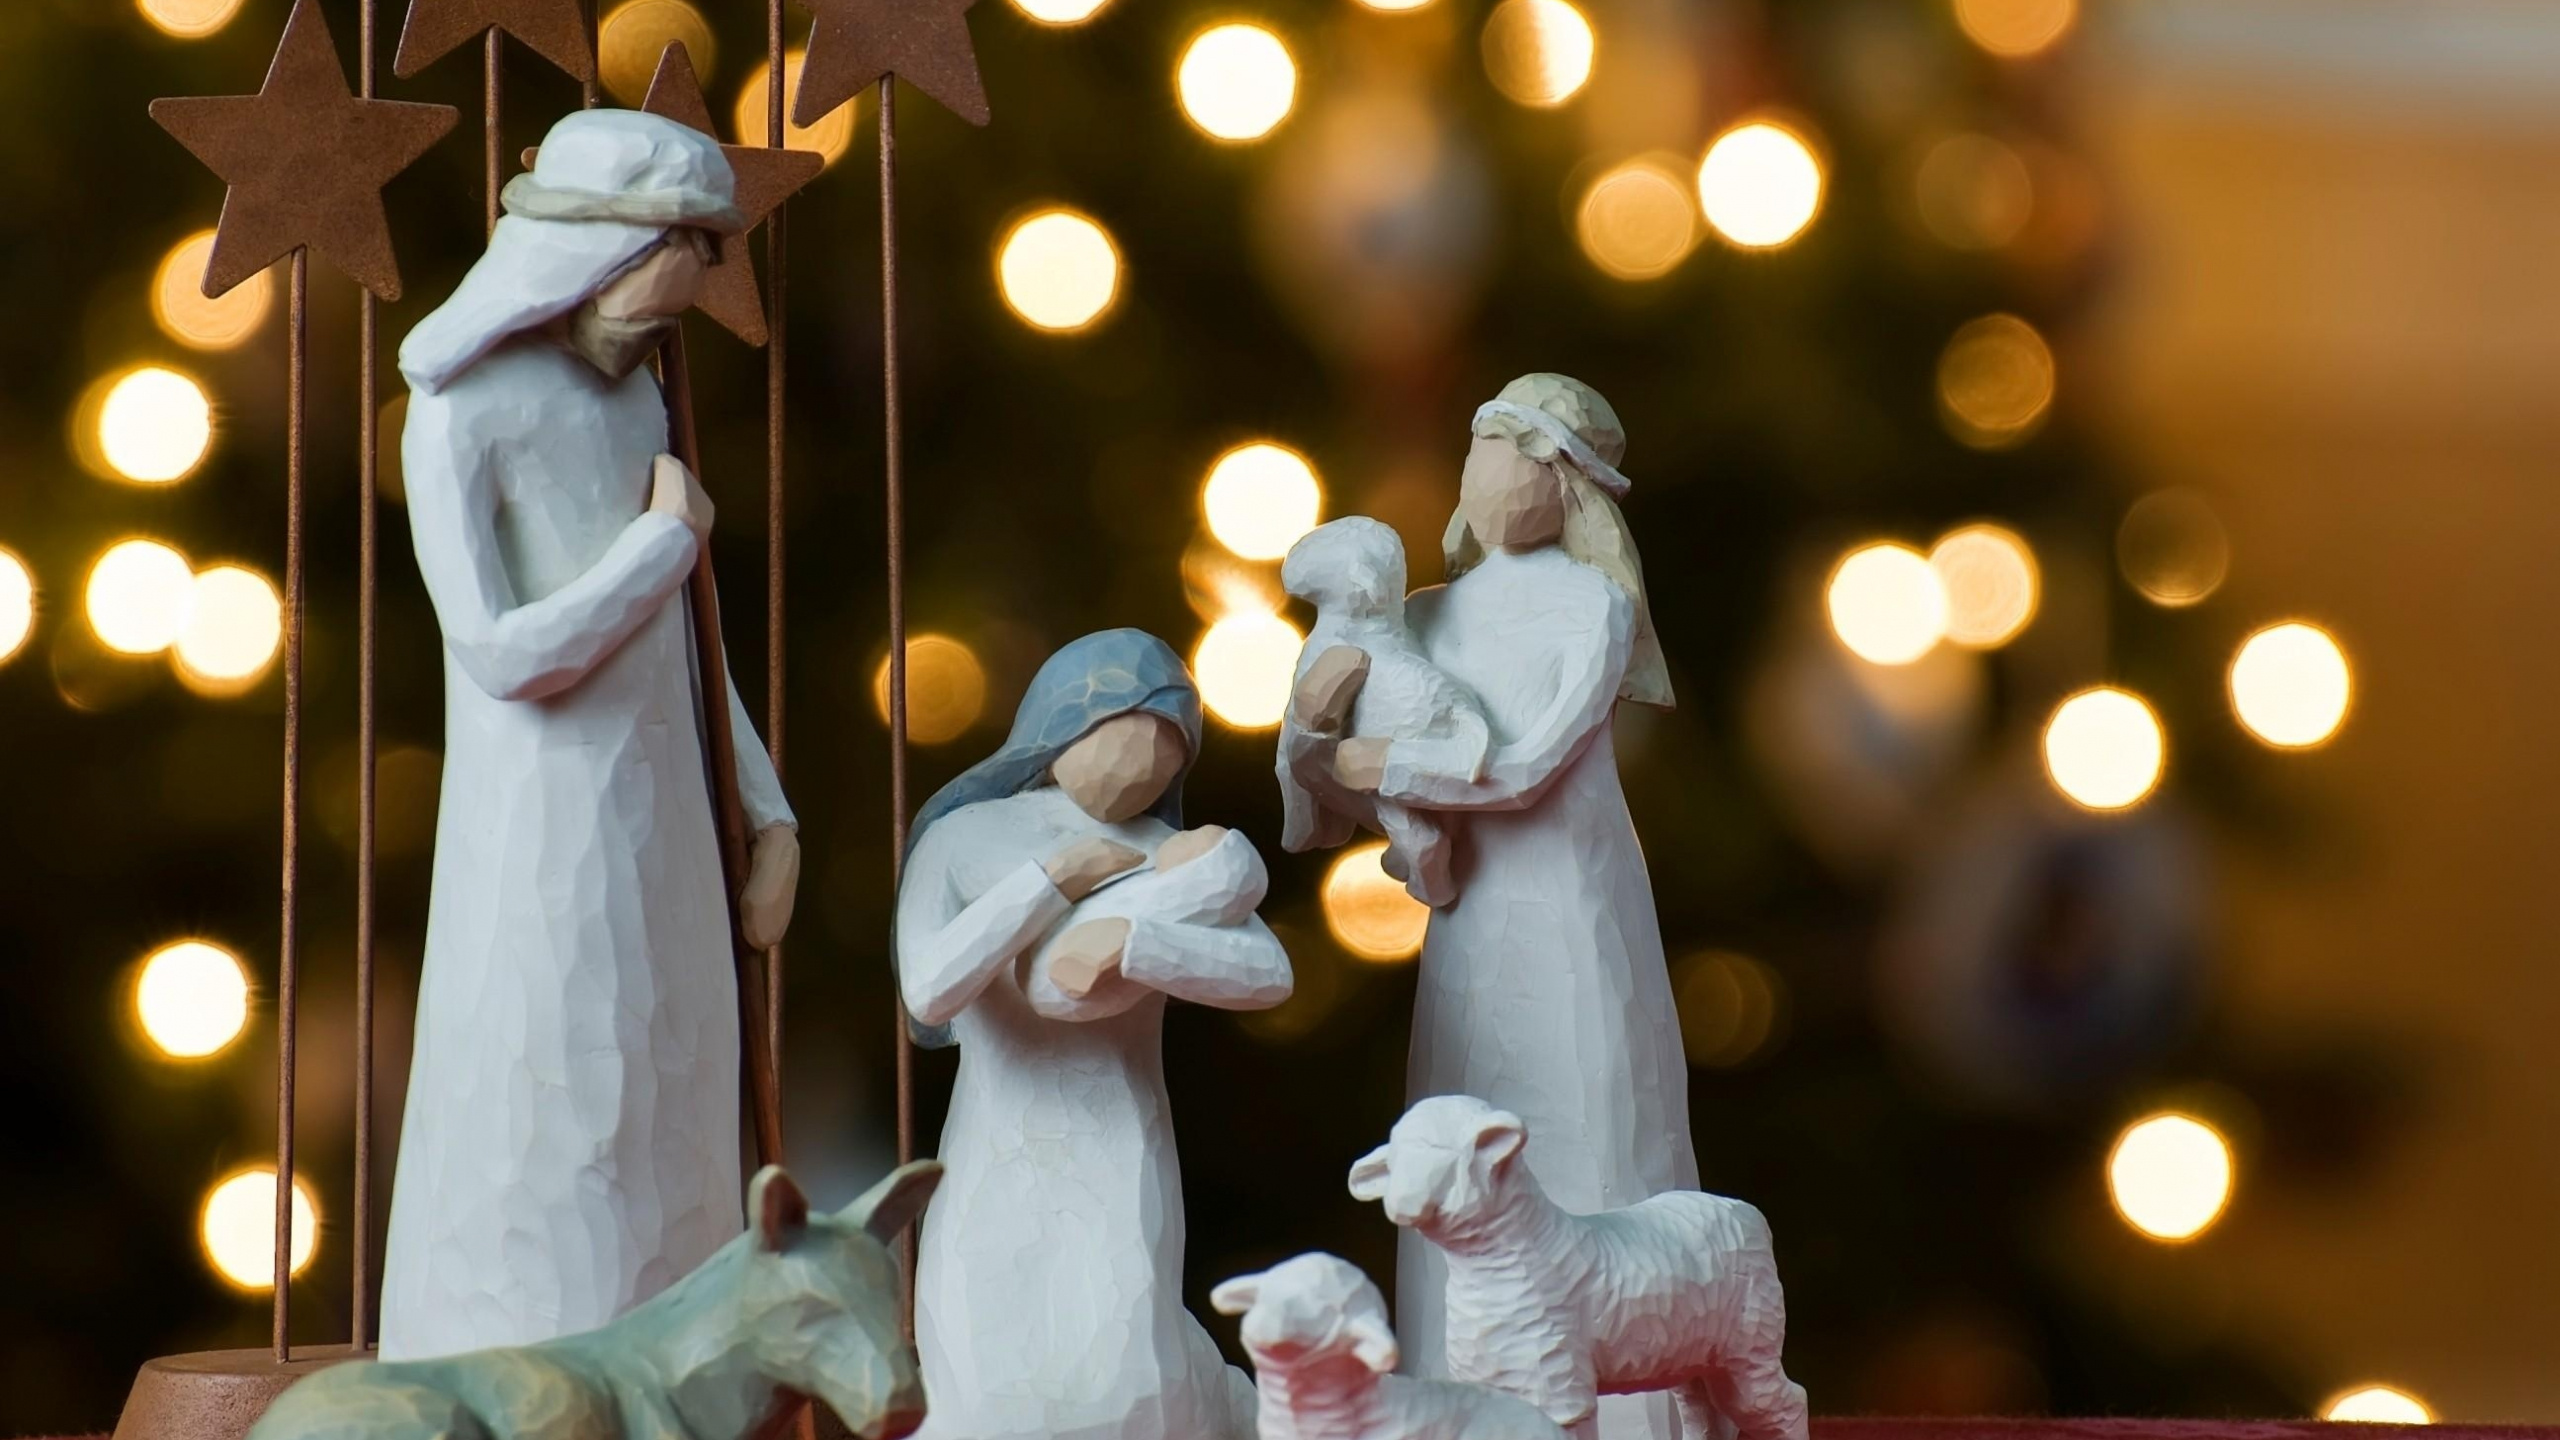 Nativité de Jésus, Scène de la Nativité, Décoration de Noël, Tradition, Événement. Wallpaper in 2560x1440 Resolution